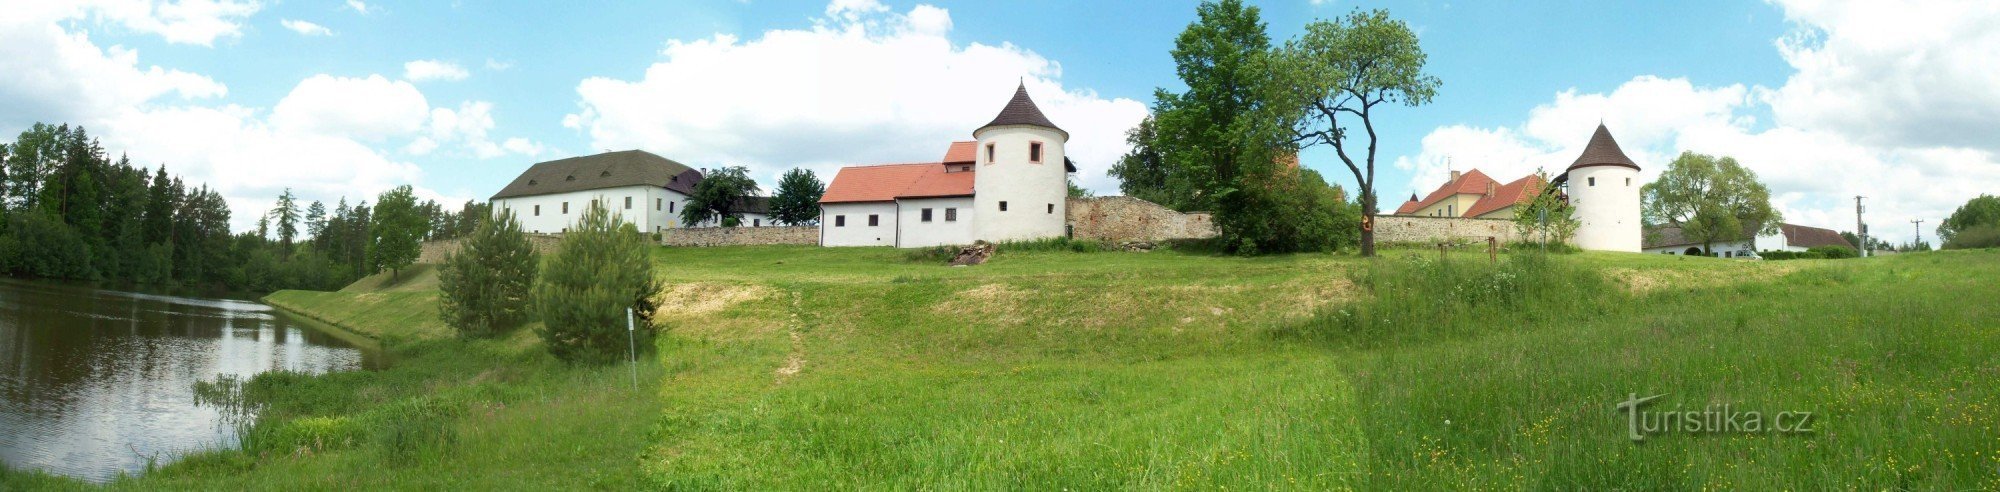 FORTERESSE DE ŽUMBERK près du NOUVEAU CHÂTEAU